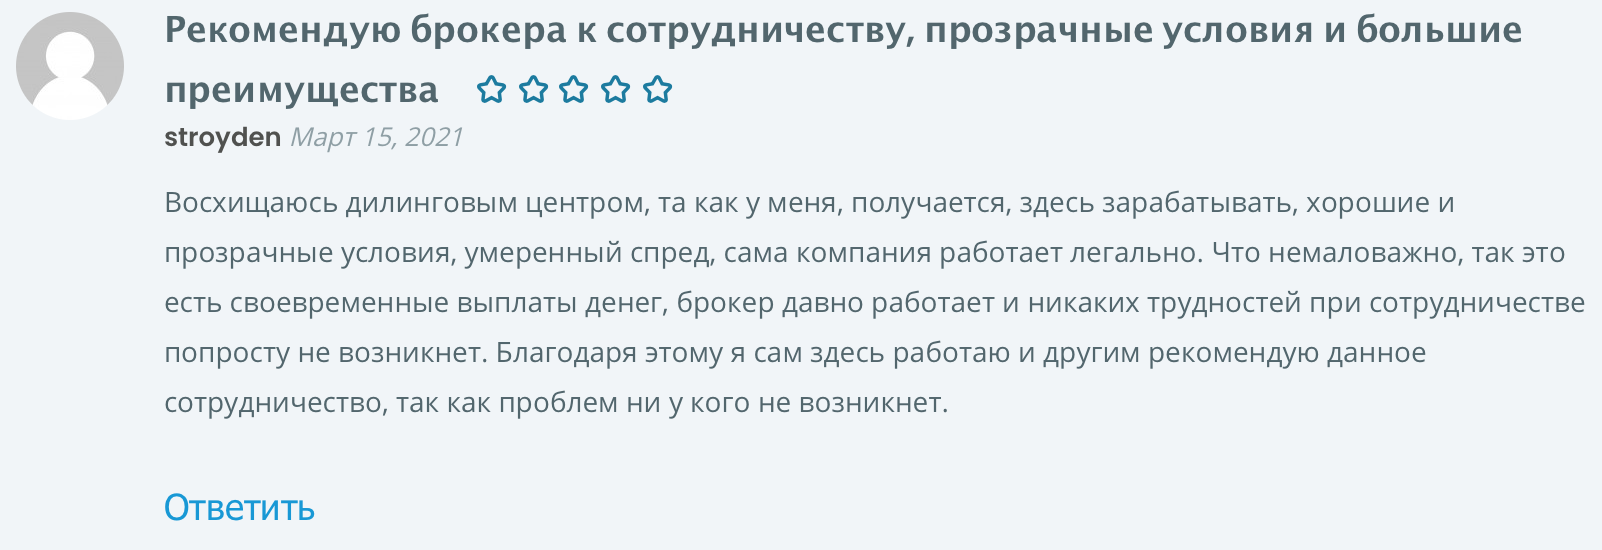 Profi.ru отзывы - ответы от официального представителя - первый независимый сайт отзывов россии